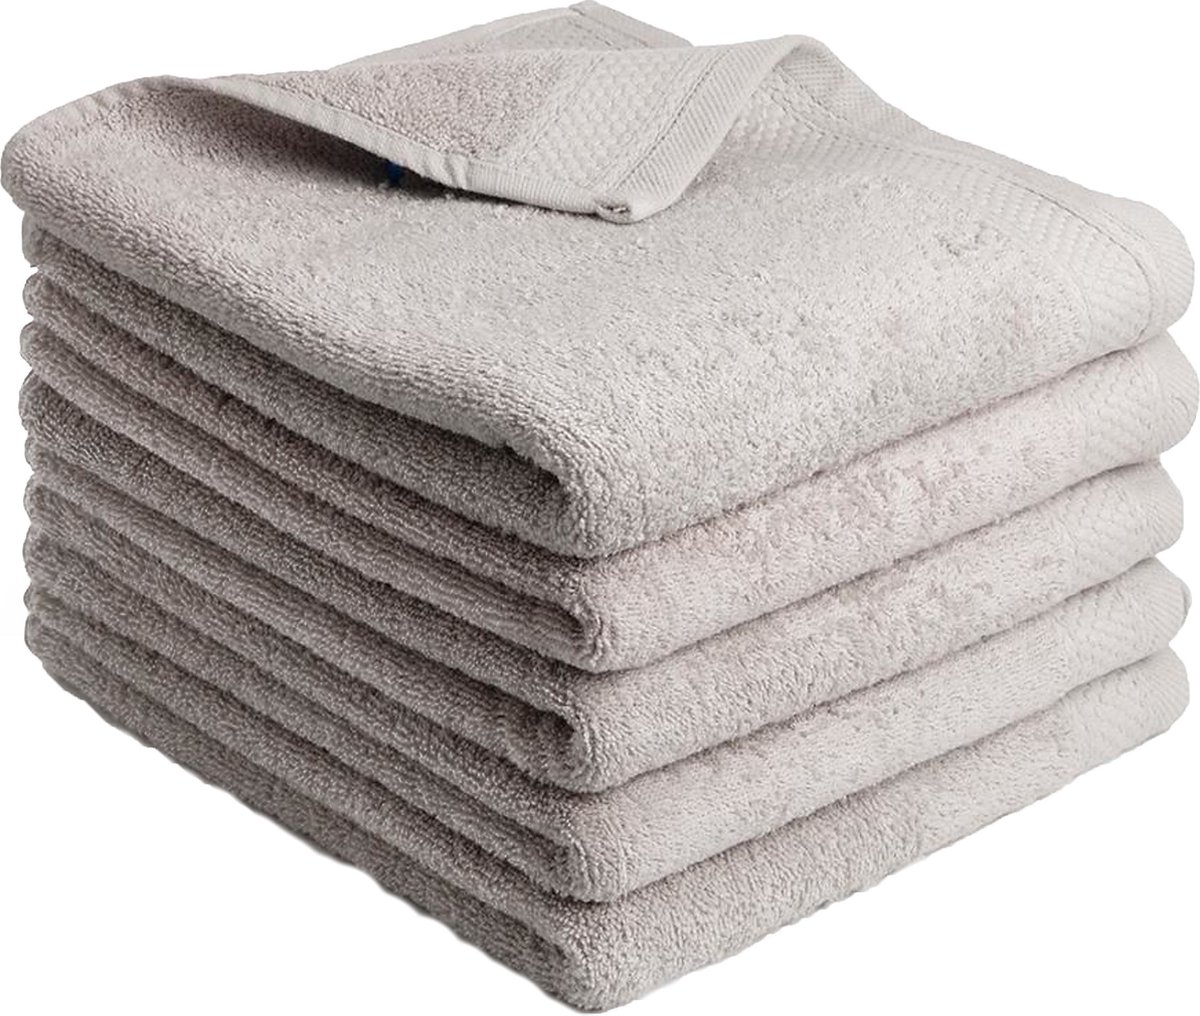 Handdoeken Katoen - Litalente - Hotel Handdoek - 60x110 cm - 550g/m² - Grijs - N.B. Zachte handdoeken 100% katoen - 5-delig - badhanddoeken 110 x 60 cm